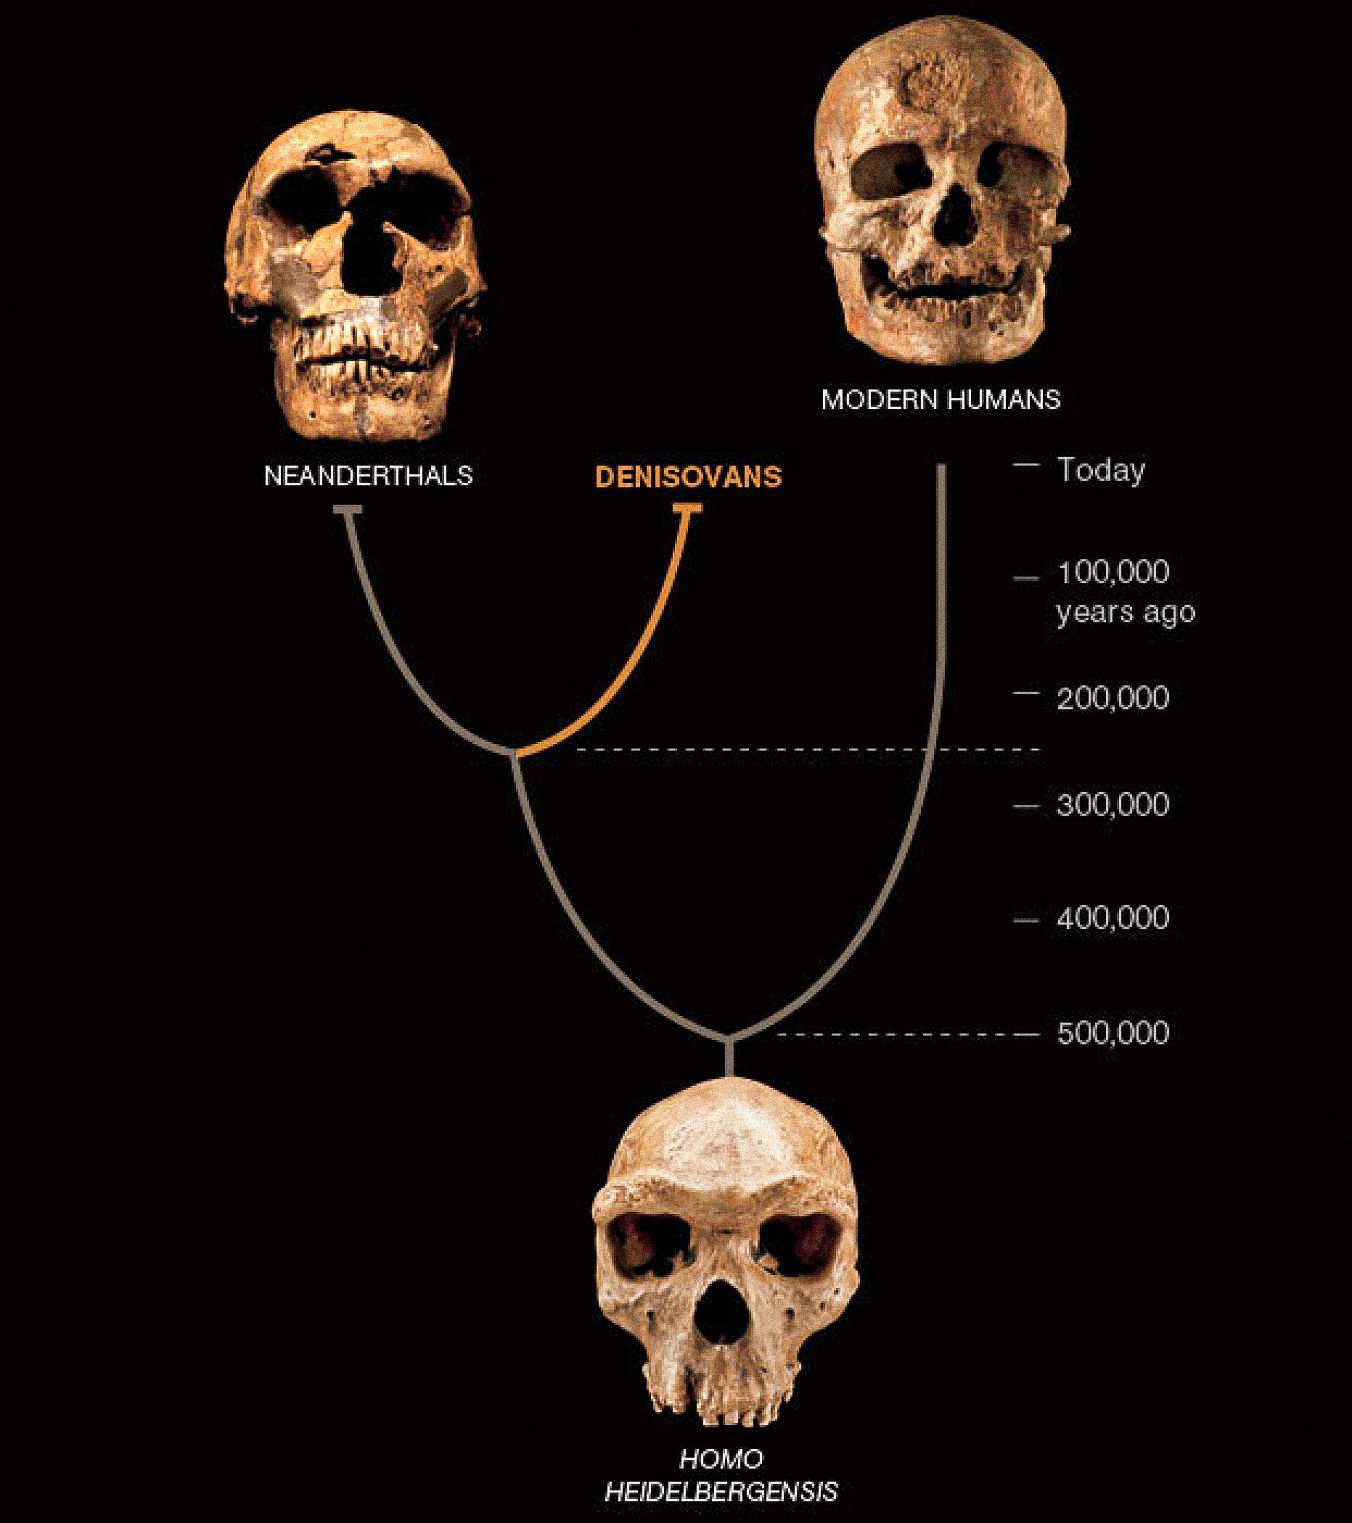 Denisovans නමින් හැඳින්වෙන තුන්වන වර්ගයේ මනුෂ්‍යයන්, නියැන්ඩර්තාල් සහ මුල් නූතන මානවයන් සමඟ ආසියාවේ සහජීවනයෙන් සිටි බව පෙනේ. අවසාන දෙක බහුල පොසිල සහ පුරාවස්තු වලින් දනී. Denisovans මෙතෙක් නිර්වචනය කර ඇත්තේ එක් අස්ථි චිපයකින් සහ දත් දෙකක DNA මගින් පමණි - නමුත් එය මිනිස් කතාවට නව පෙරළියක් හෙළි කරයි.